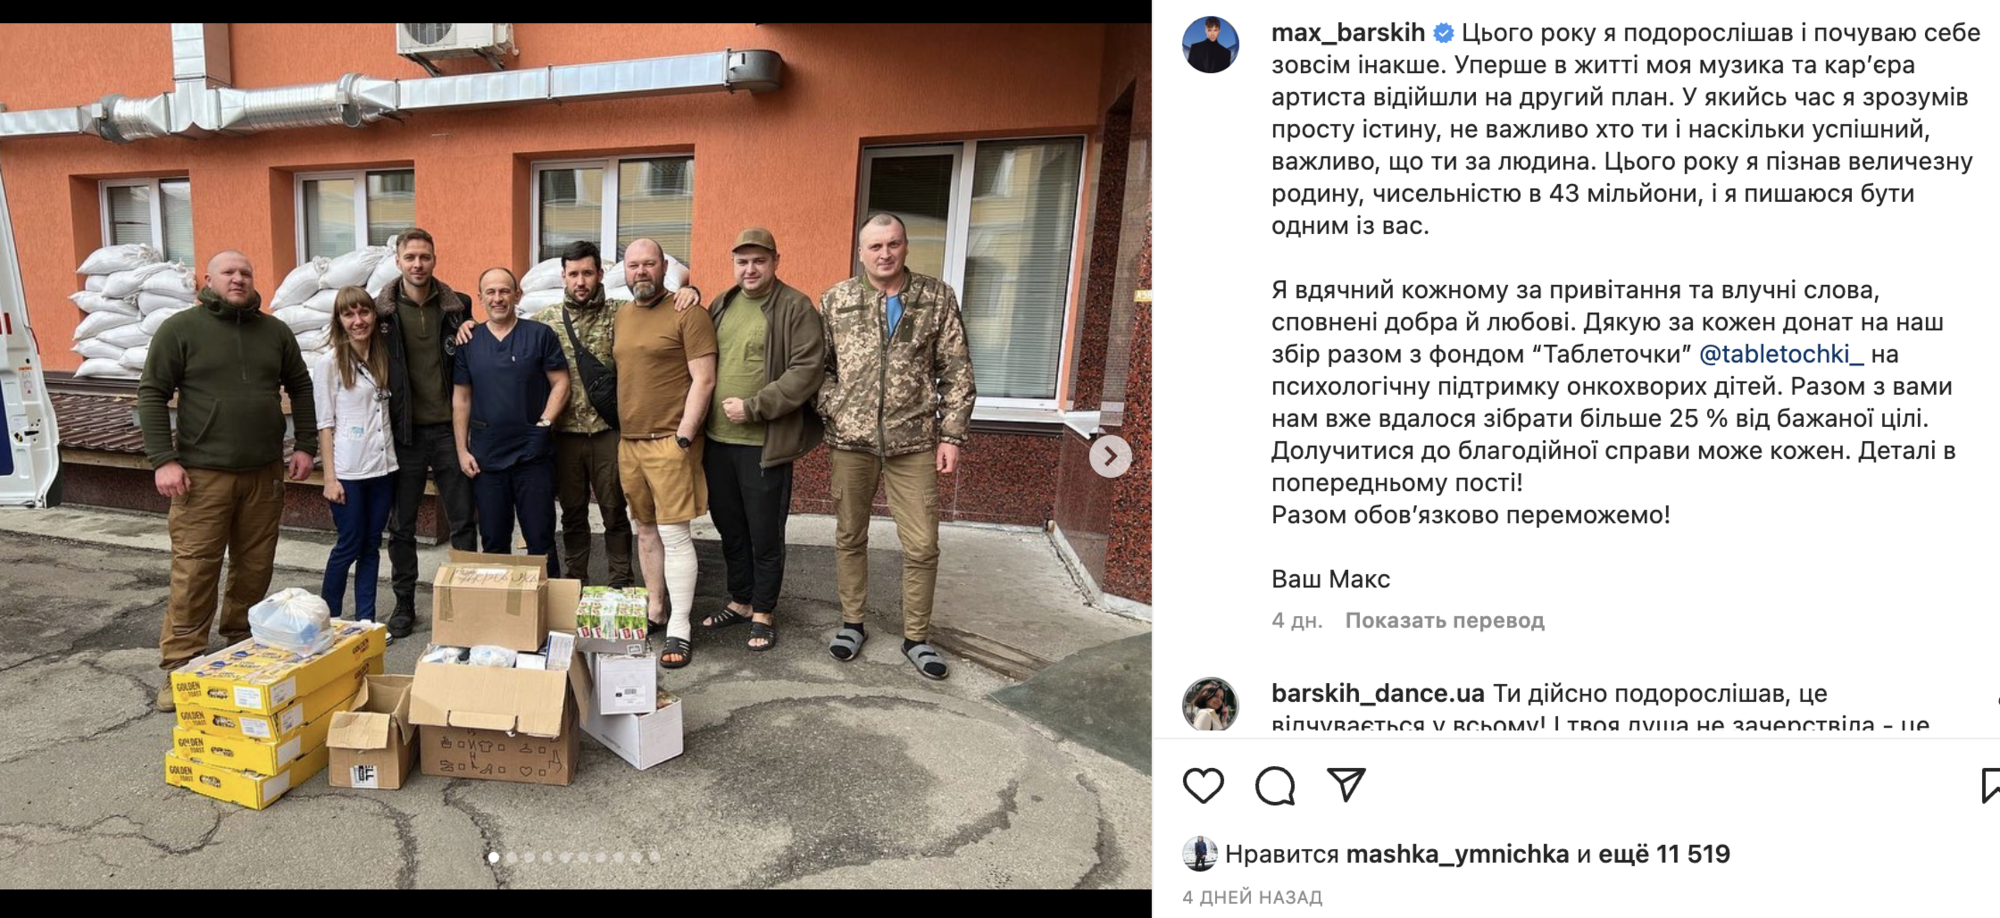 Скандал з Максом Барських: у Росії обурилися власним фейком про участь українця в премії МУЗ ТВ